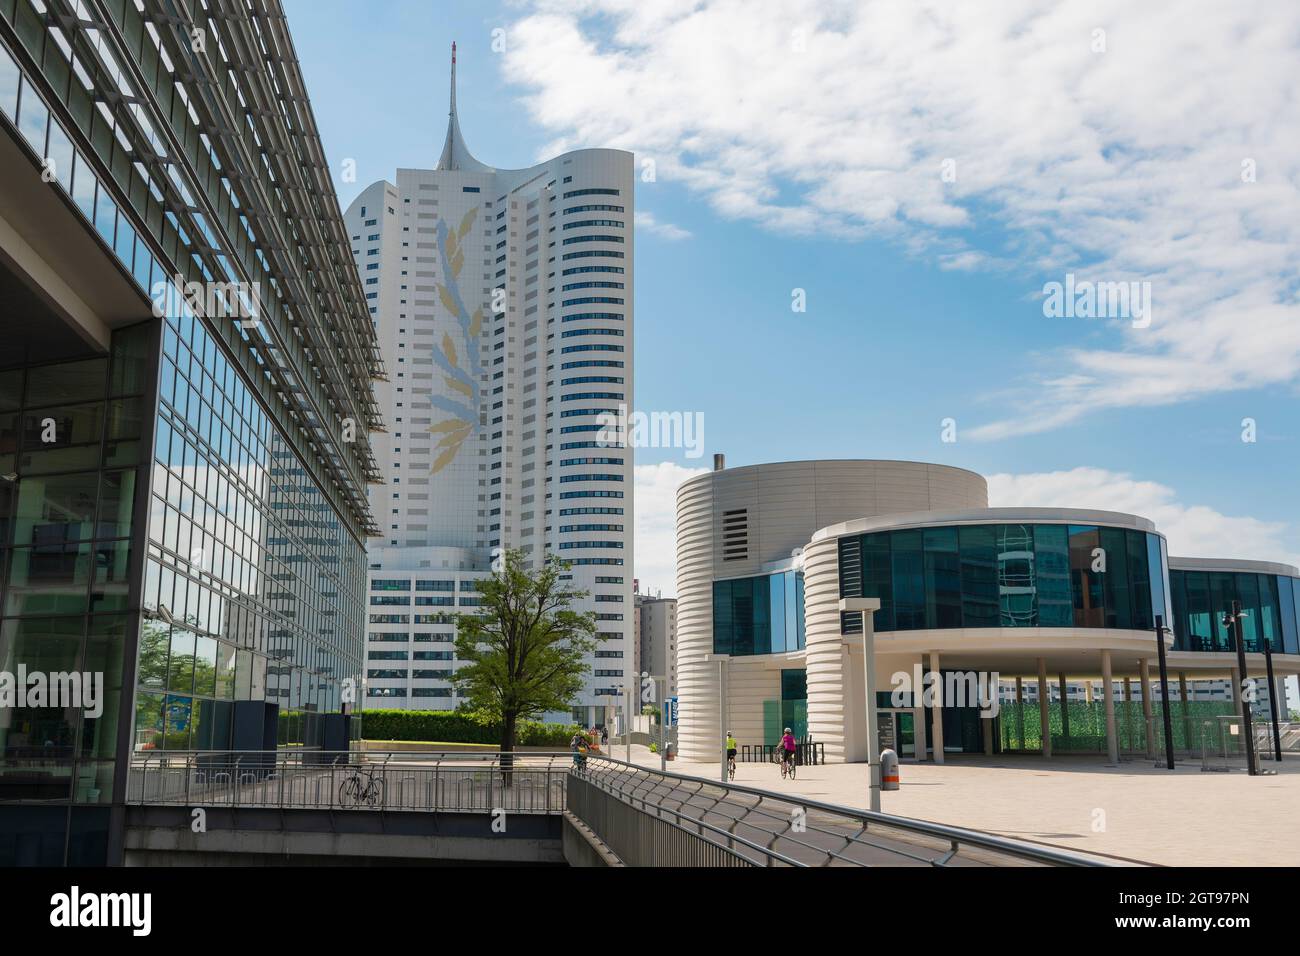 01 Juni 2019 Wien, Österreich - Donaucity Wien. Das Vienna International Center ist ein Komplex mit Wolkenkratzern, einem großen Geschäftszentrum an der Donau Stockfoto